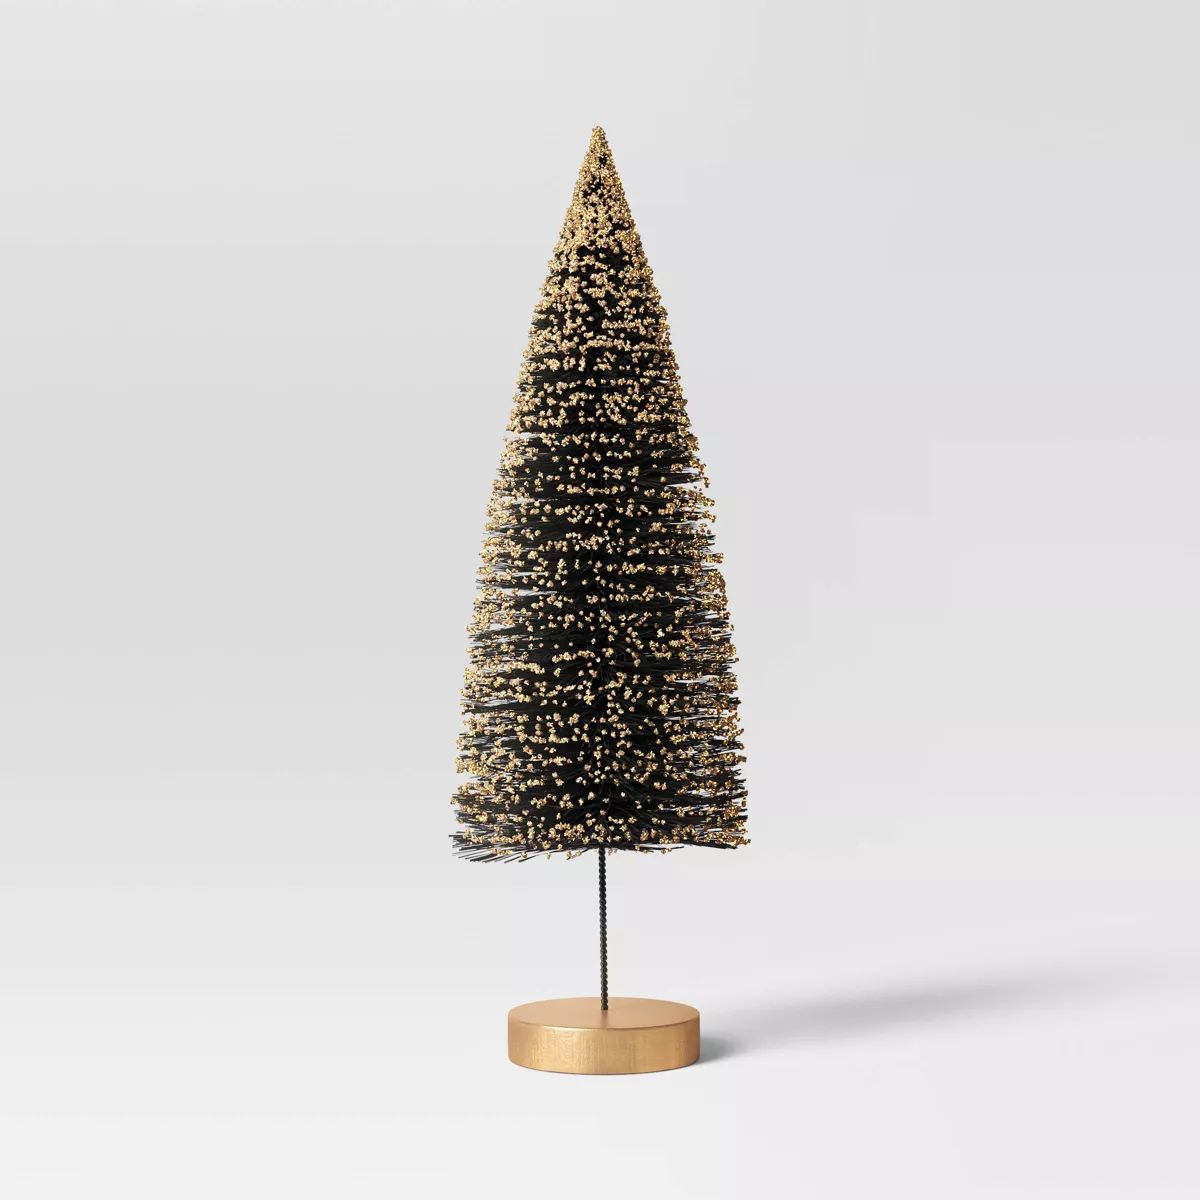 12" Glittered Sisal Christmas Bottle Brush Tree - Wondershop™ Black | Target